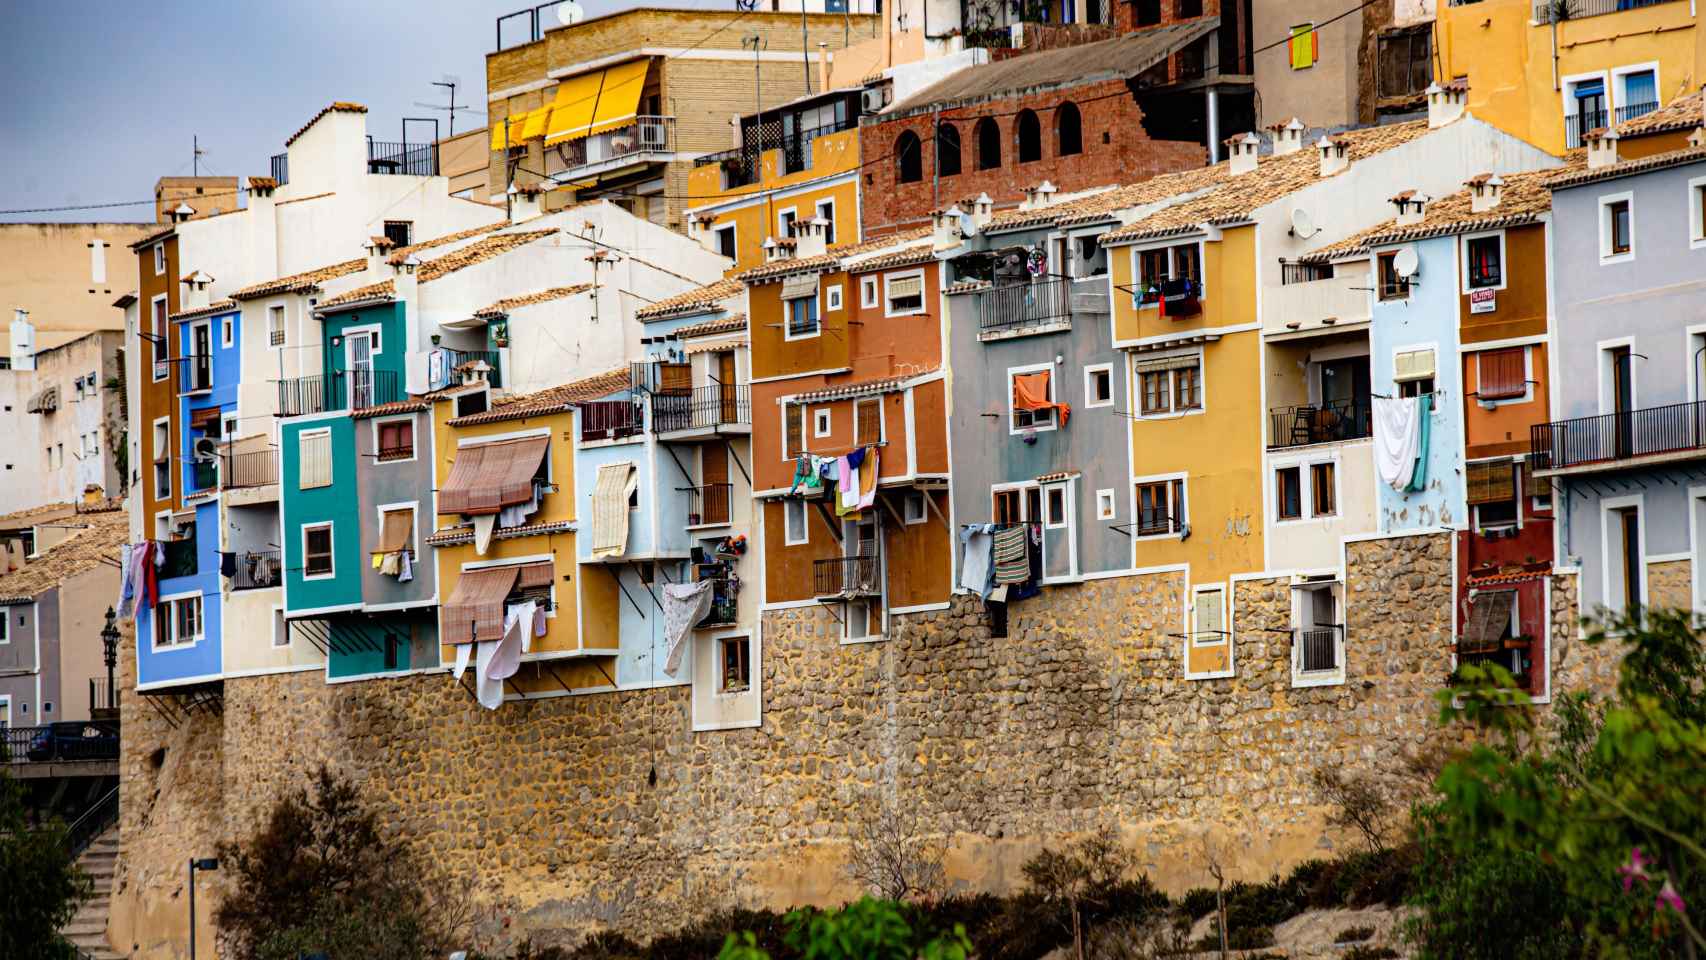 La Guardia Civil detiene a cuatro personas acusadas de una trama de okupación de viviendas turísticas. En la imagen, las coloridas casas de pescadores de La Vila Joiosa.